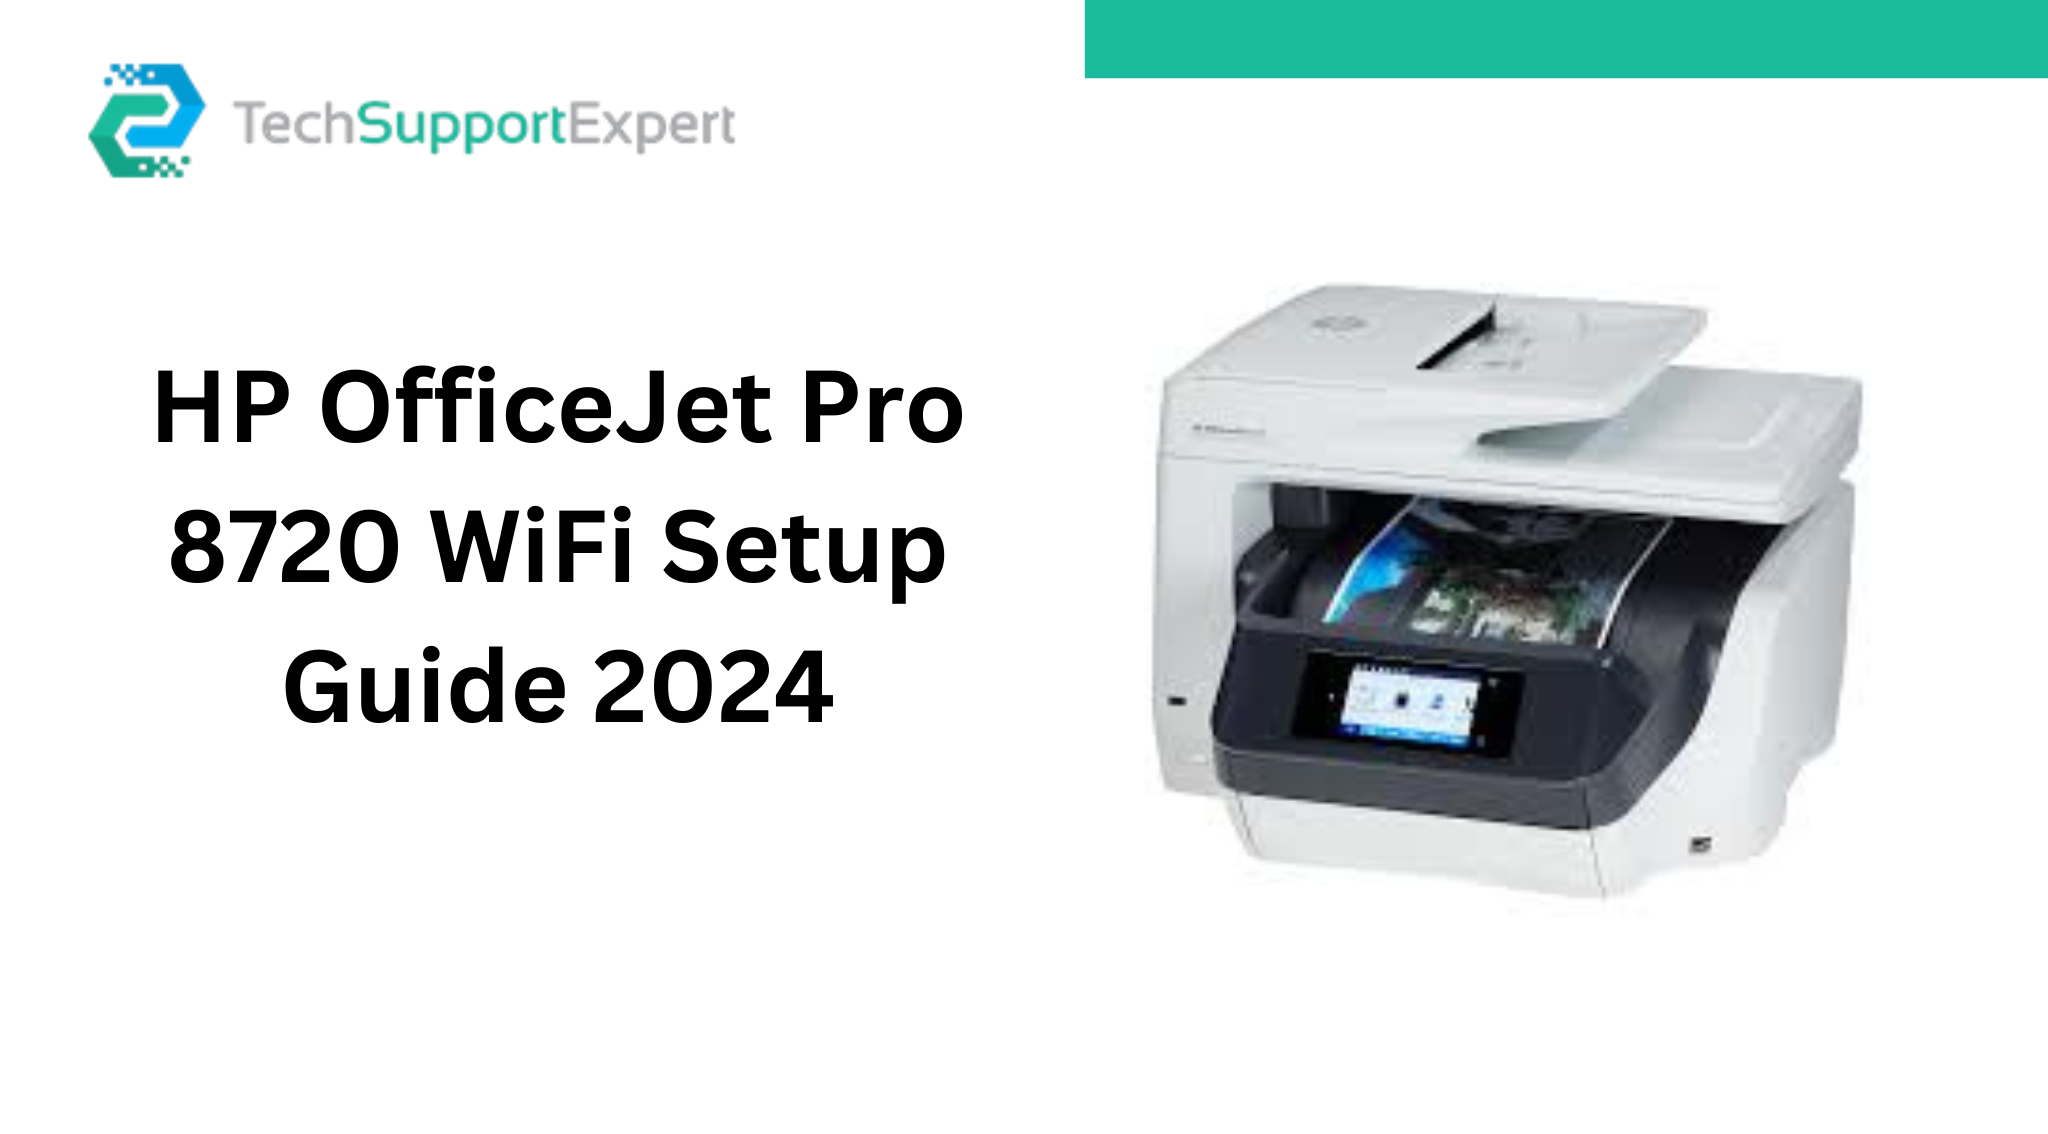 HP OfficeJet Pro 8720 WiFi Setup Guide 2024